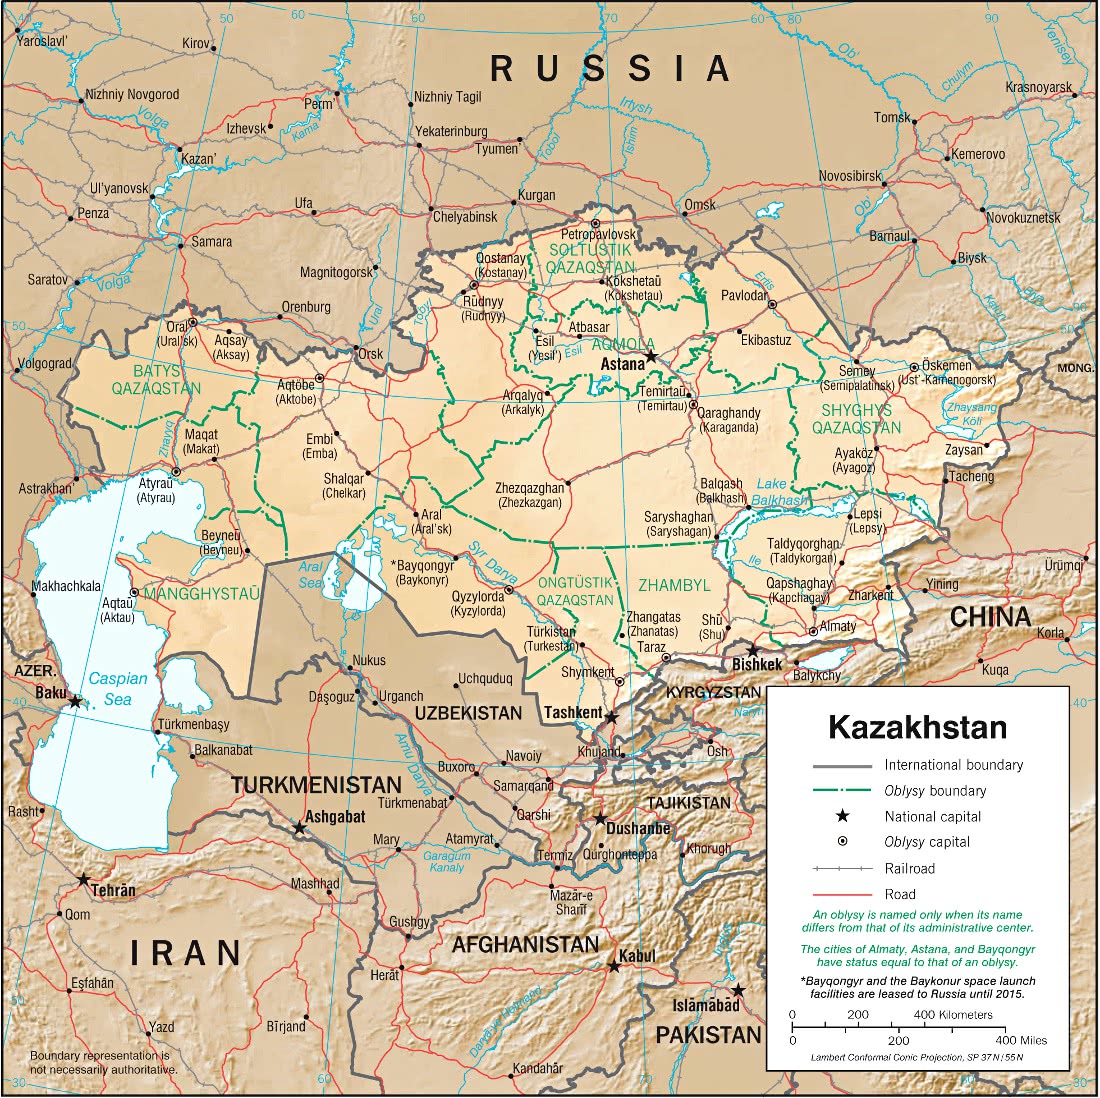 Kazakhstan relief map 2001